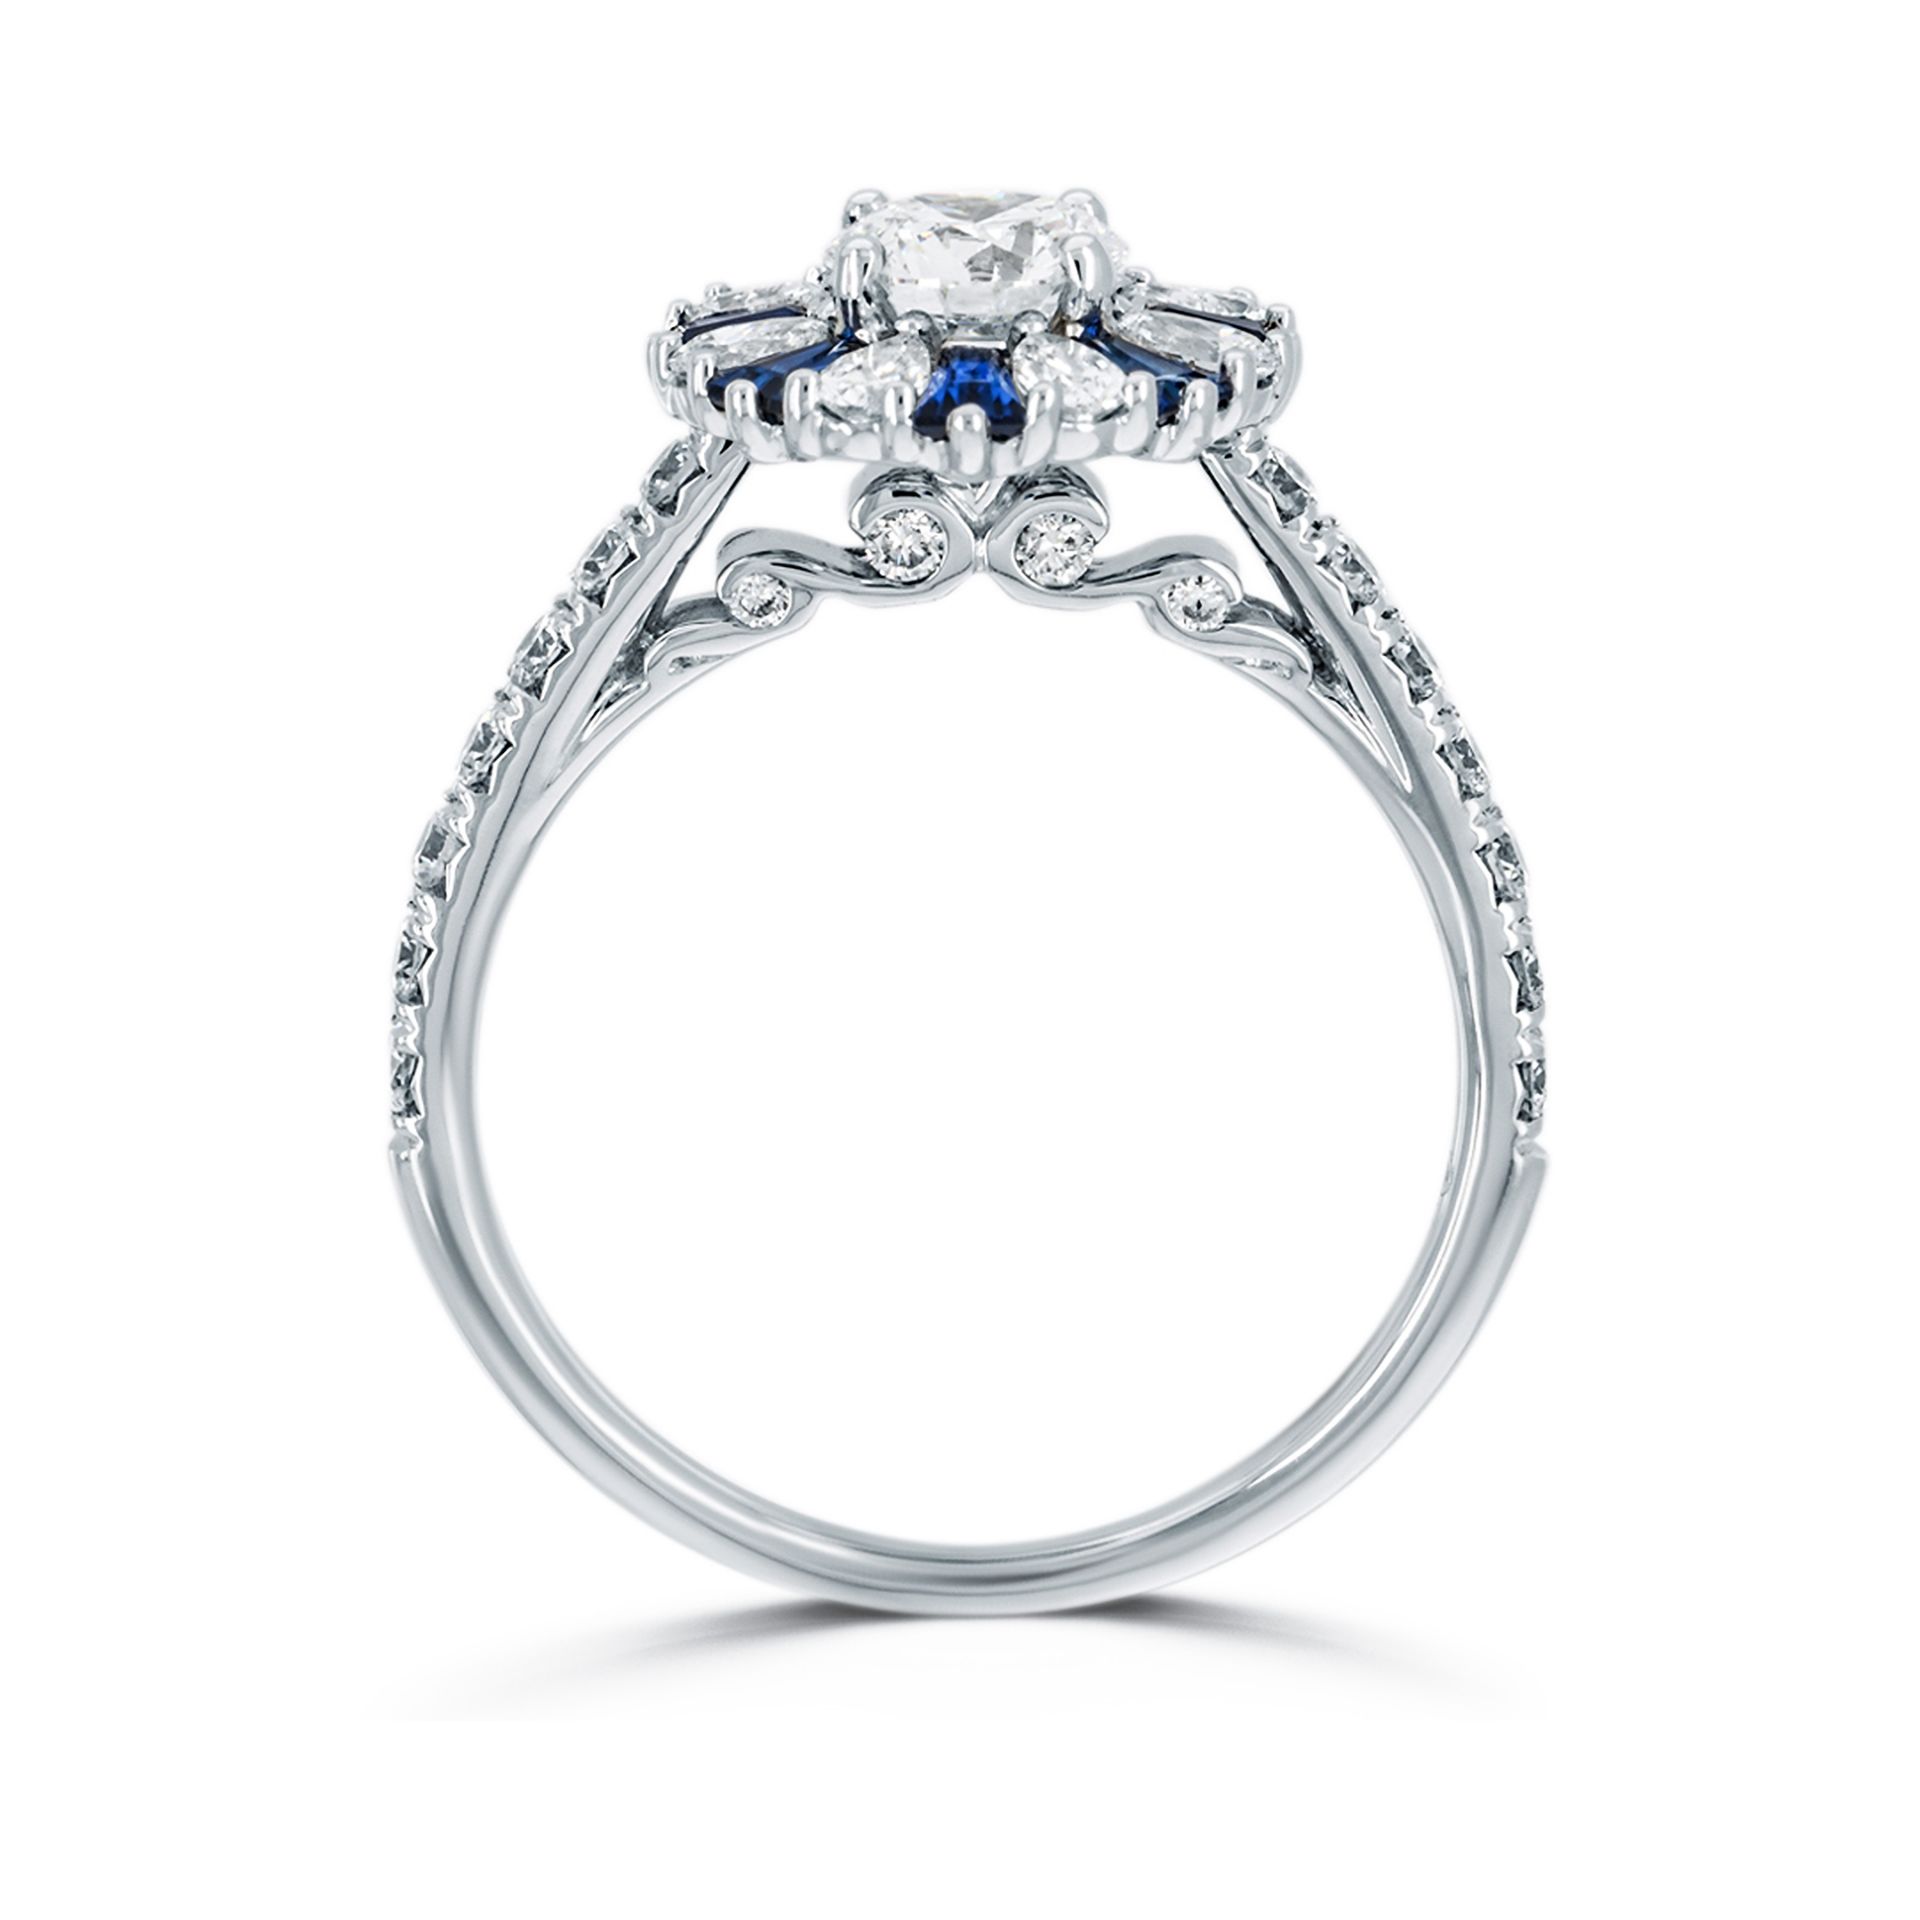 Verlobungsring 18 Karat Weißgold und Diamanten | Engagement Ring 18 Karat White Gold und Diamonds - Image 2 of 4